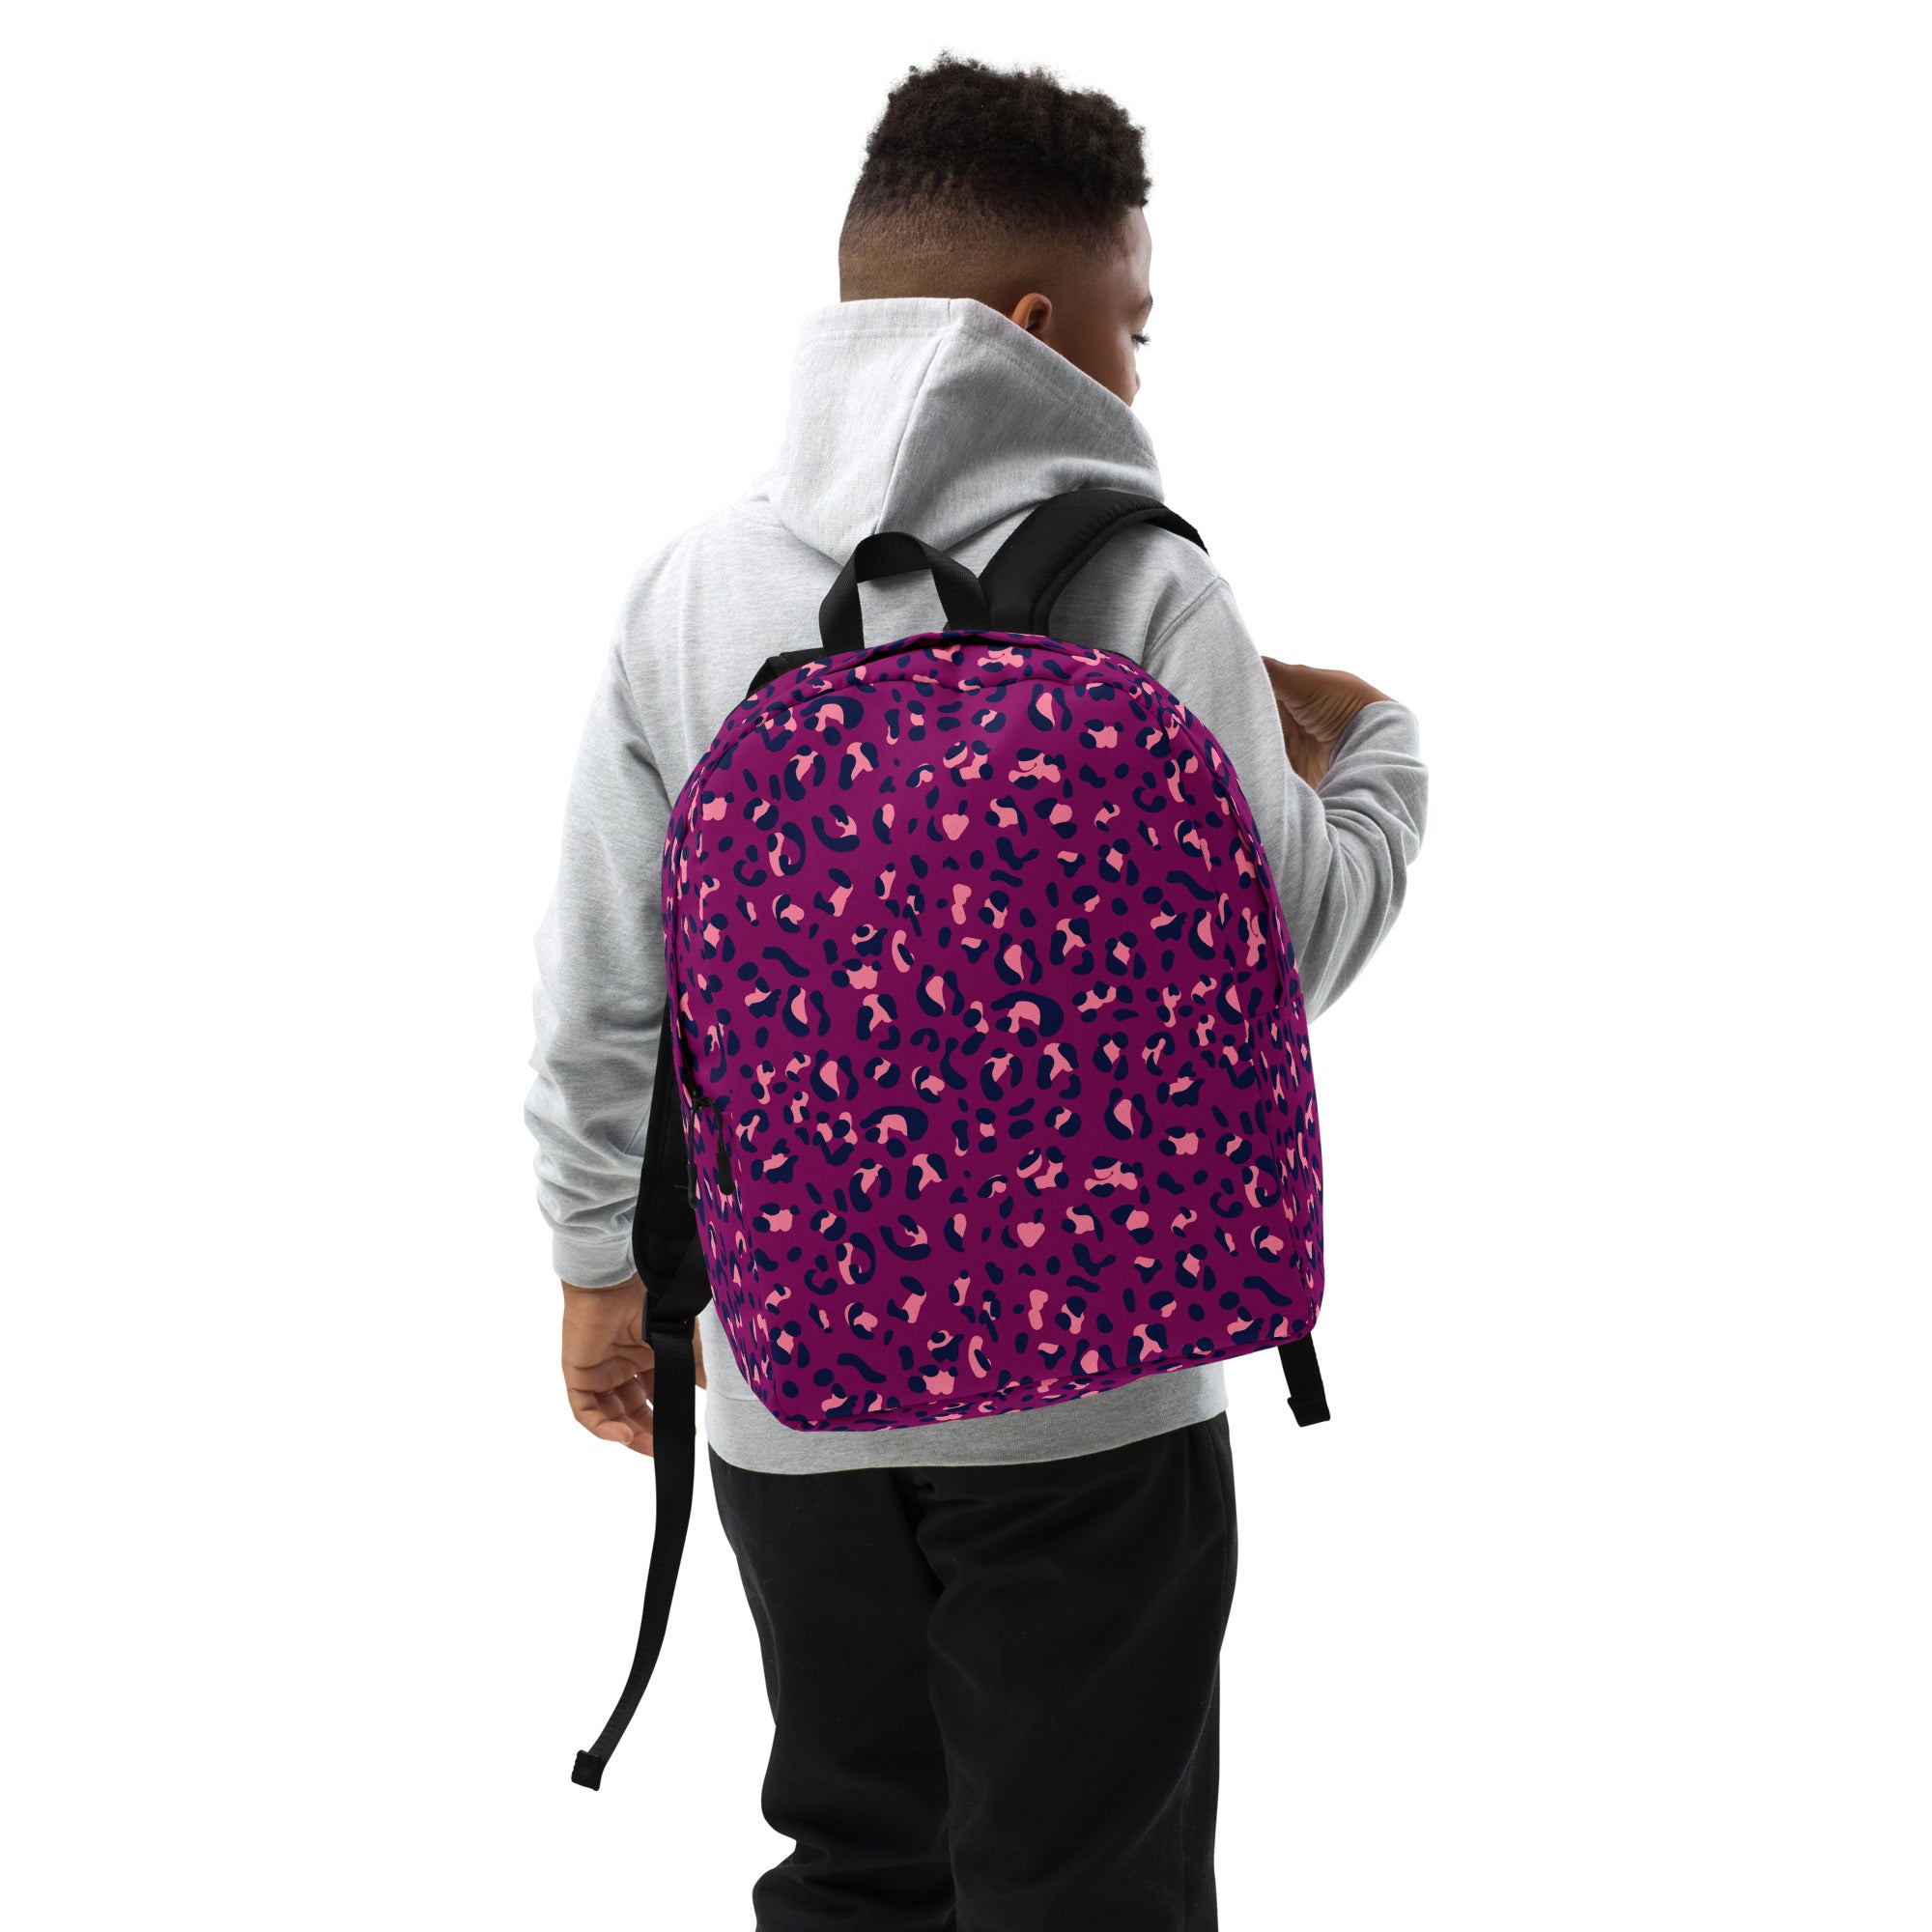 Minimalist Backpack- Leopard Print Purple